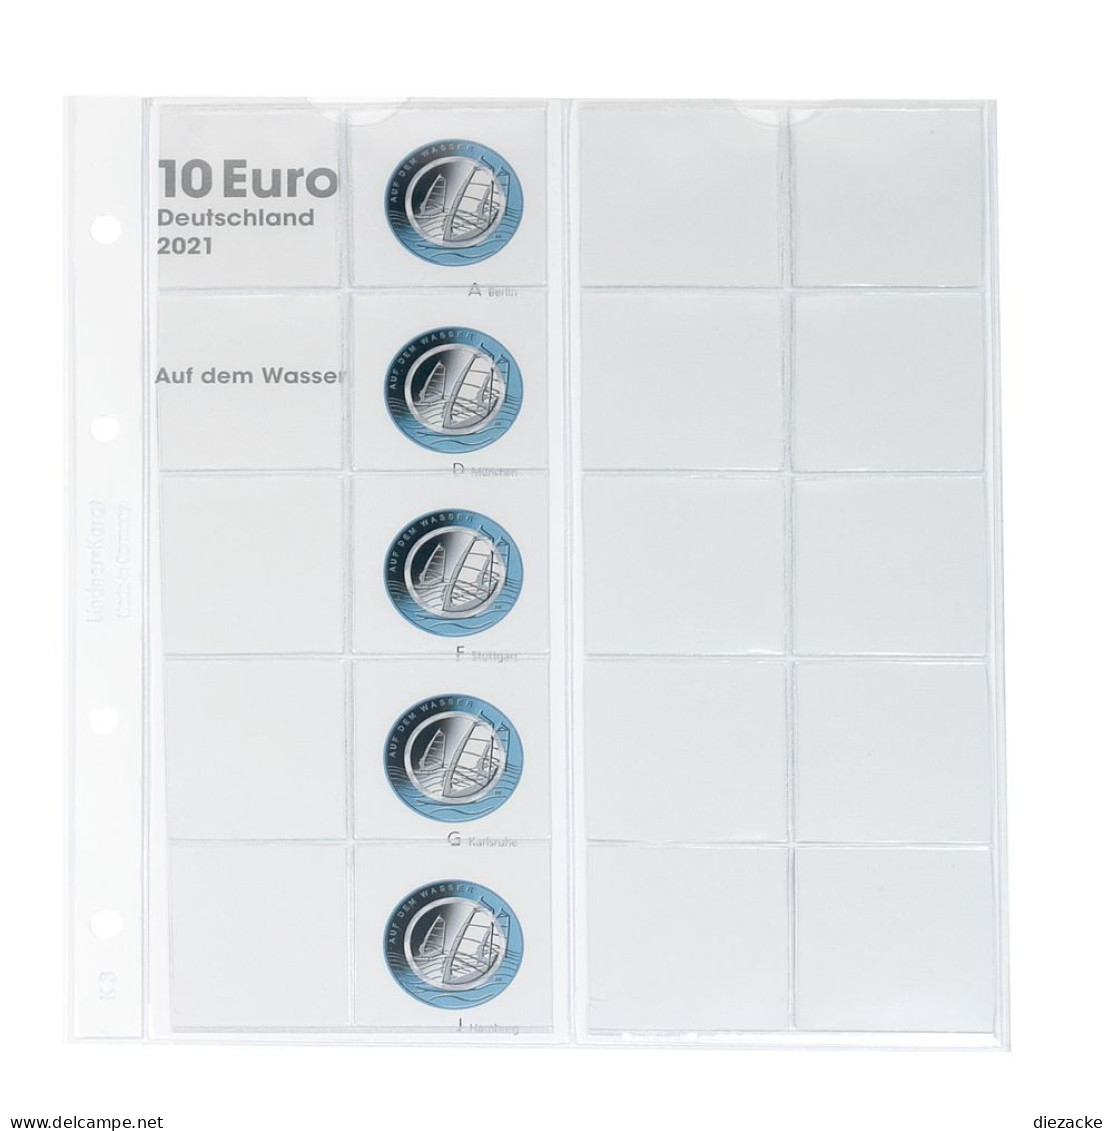 Lindner Vordruckblatt Karat Für 10 Euro-Münzen Polymerring 1110-3 Neu - Supplies And Equipment